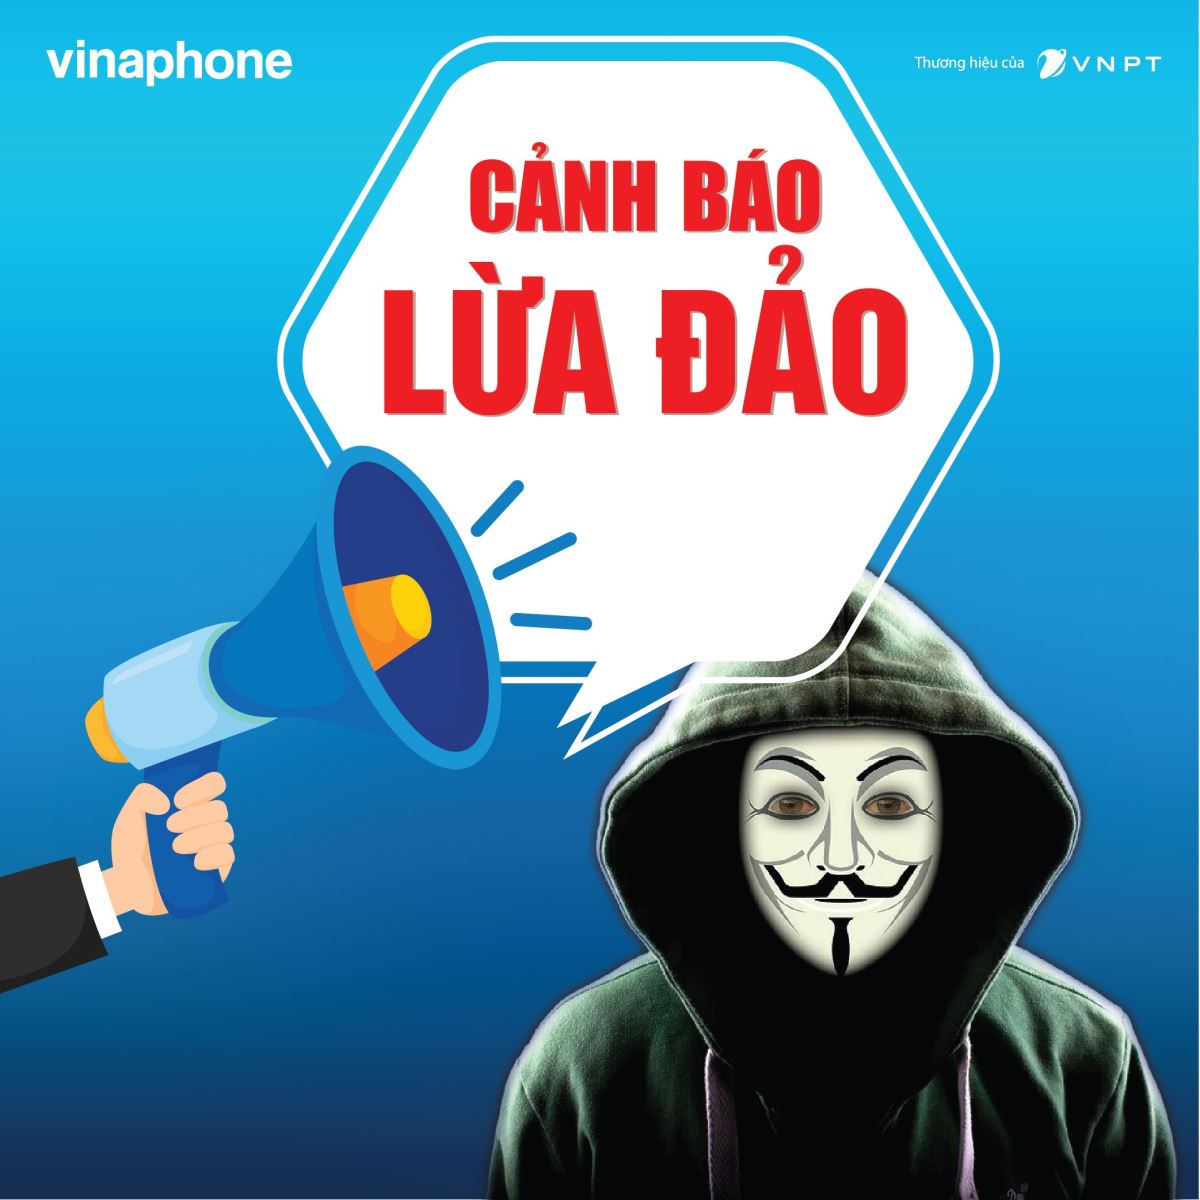 VNPT Hưng Yên cảnh báo hiện tượng mạo danh nhà mạng để lừa đảo qua điện thoại